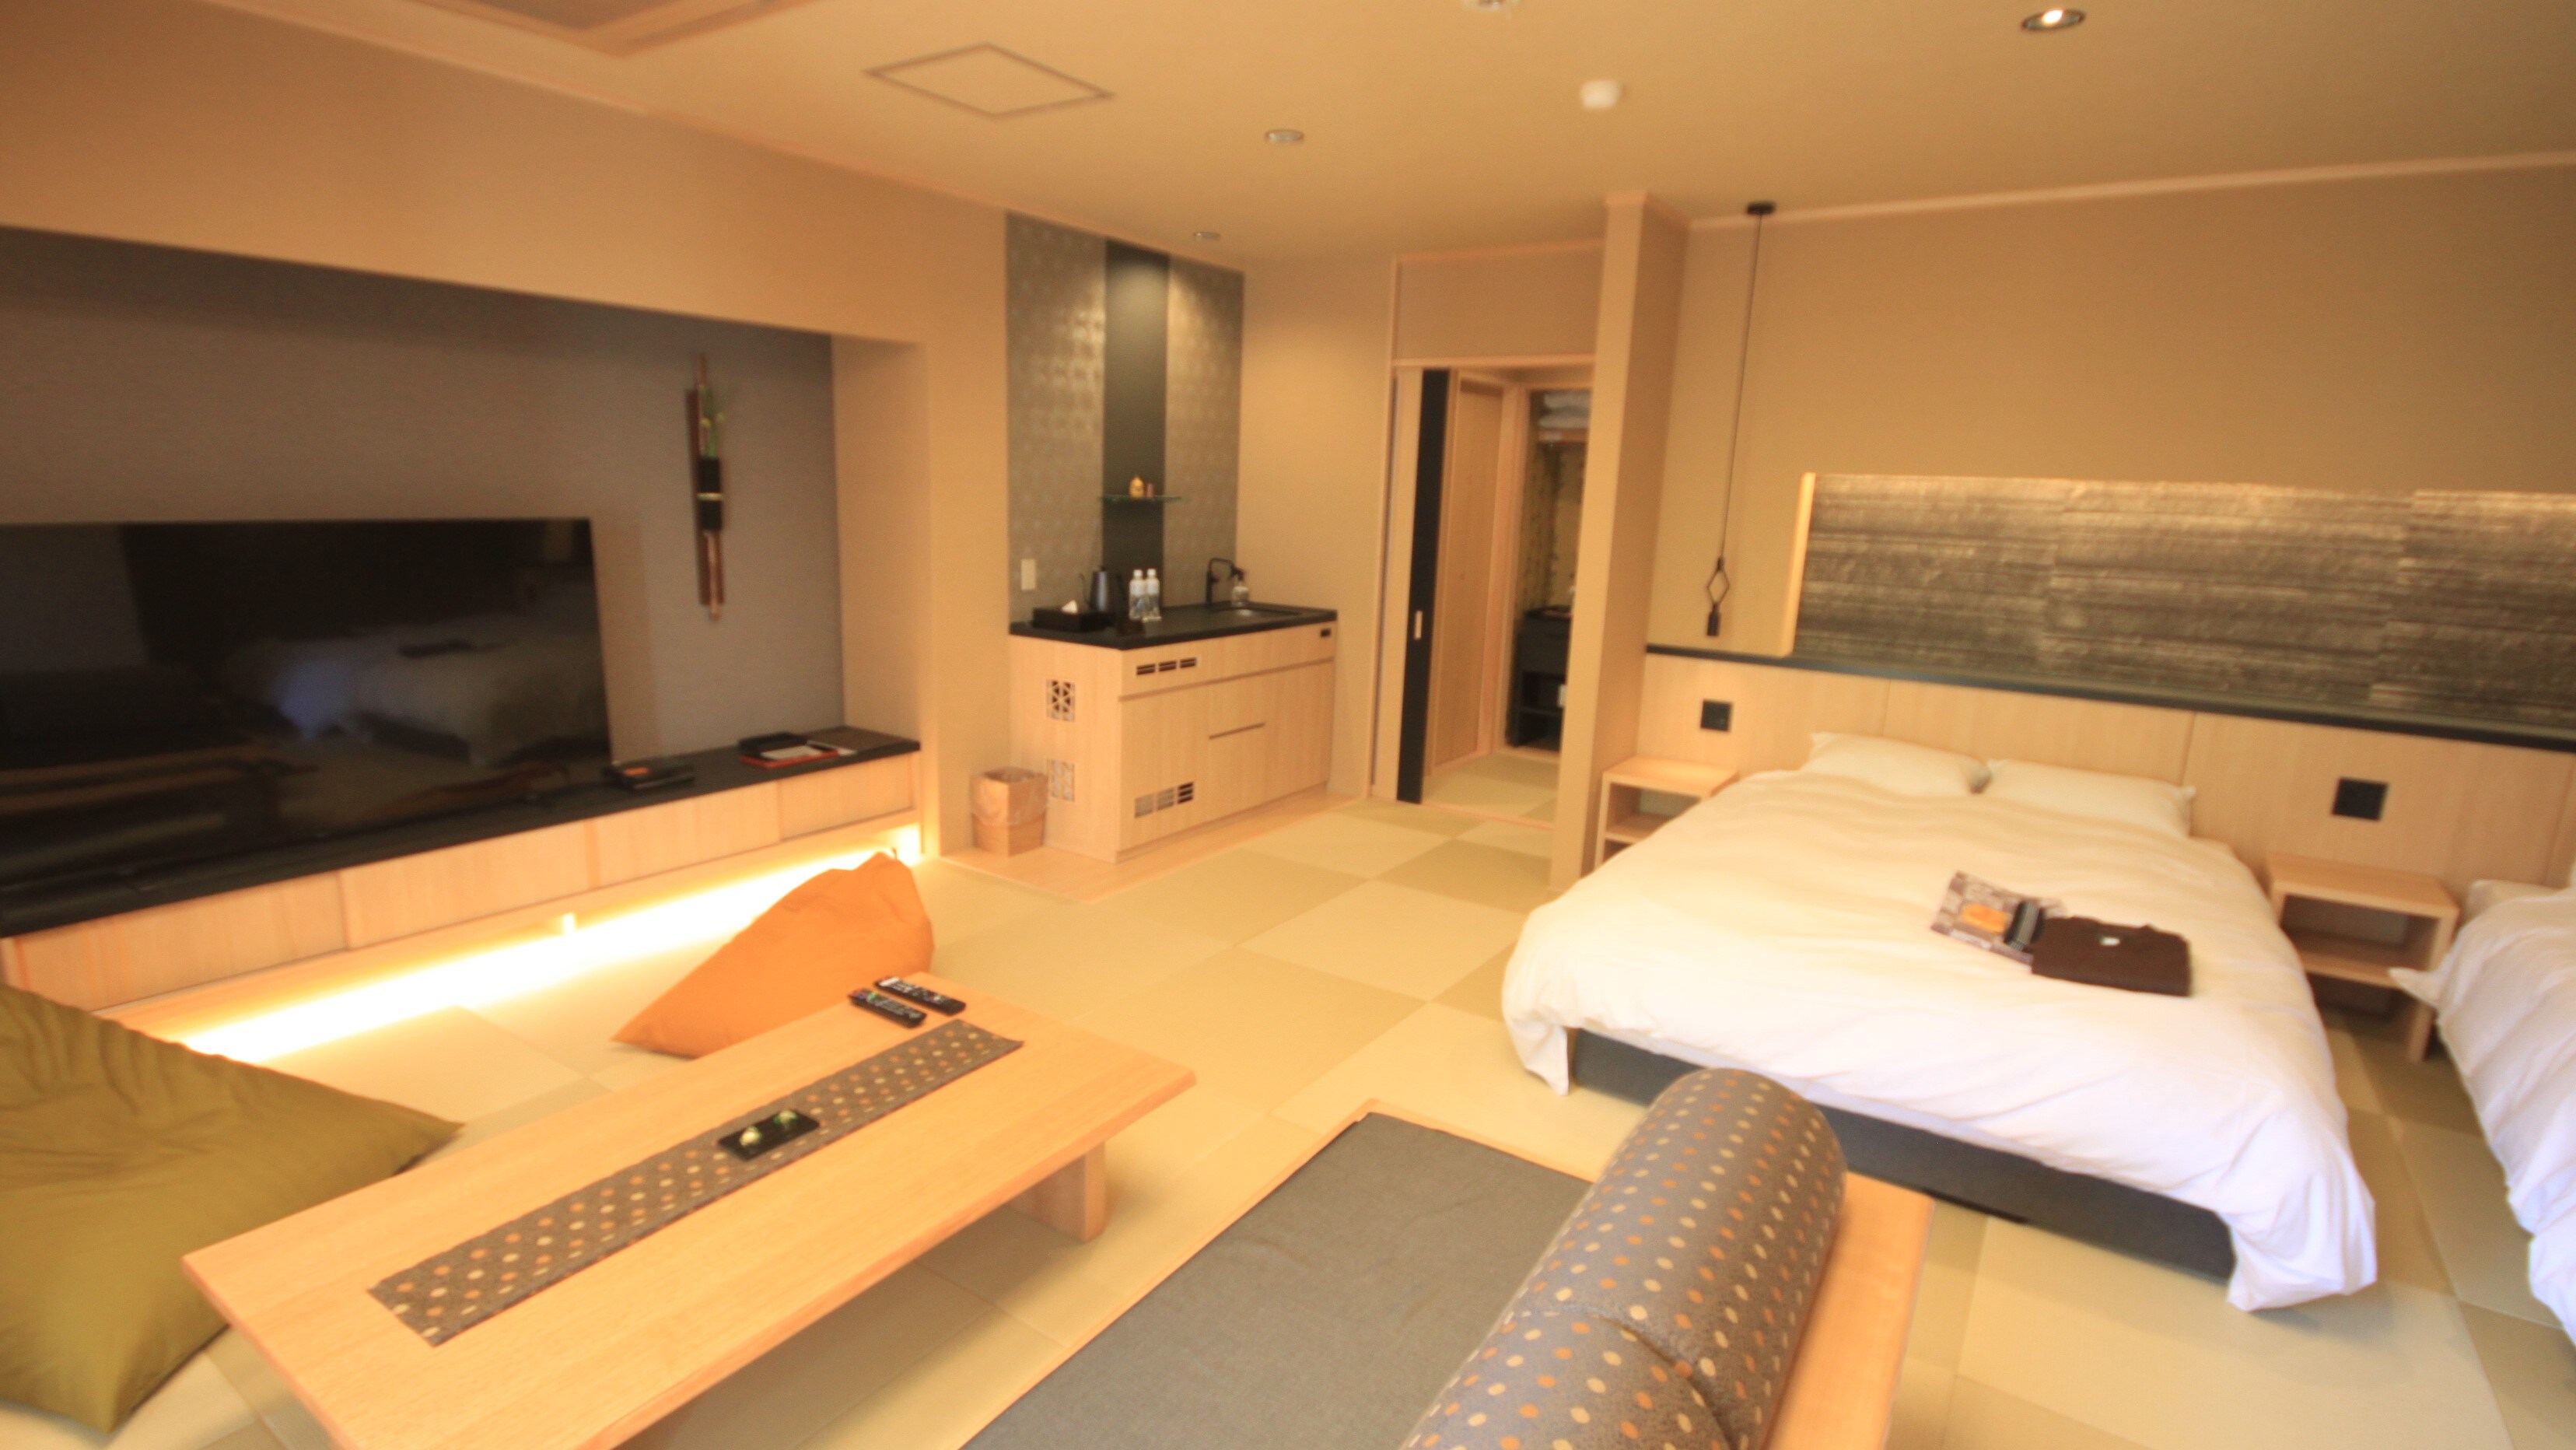 ห้องเตียงแฝดทันสมัยสไตล์ญี่ปุ่นพร้อมอ่างอาบน้ำกึ่งเปิดโล่ง